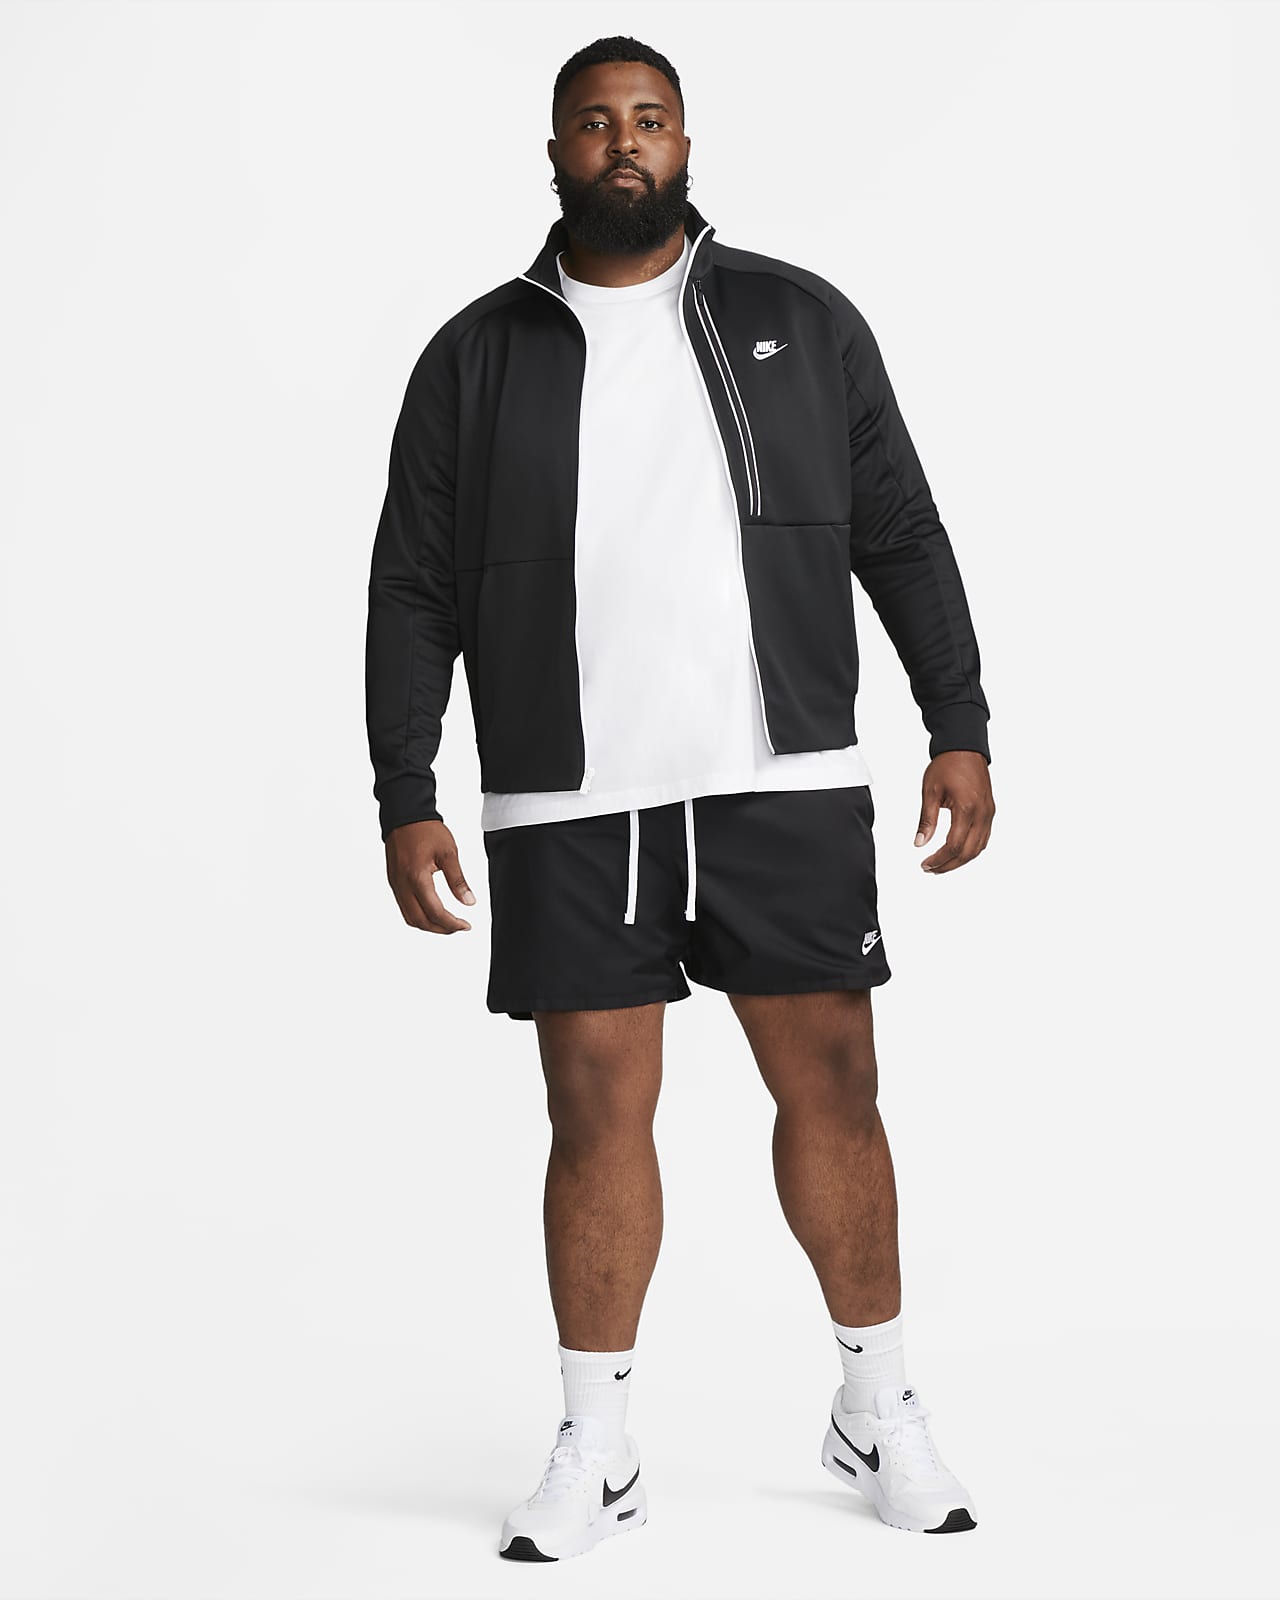 Nike Sportswear Men's Woven Flow Shorts